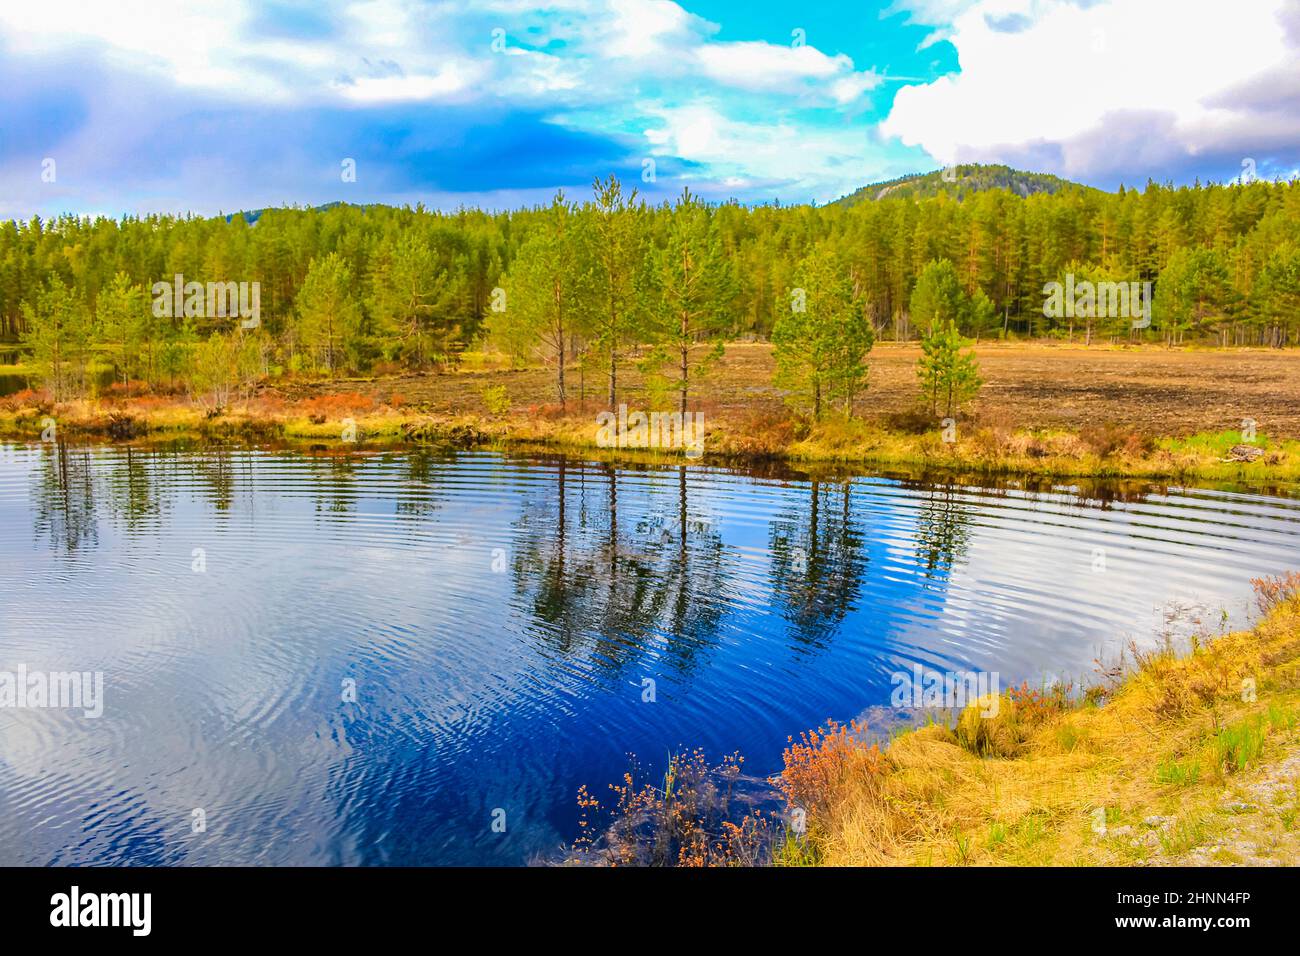 Reflet bleu clair du ciel dans l'eau du lac dans le paysage naturel de la Norvège à Treungen Nissedal Norvège. Banque D'Images